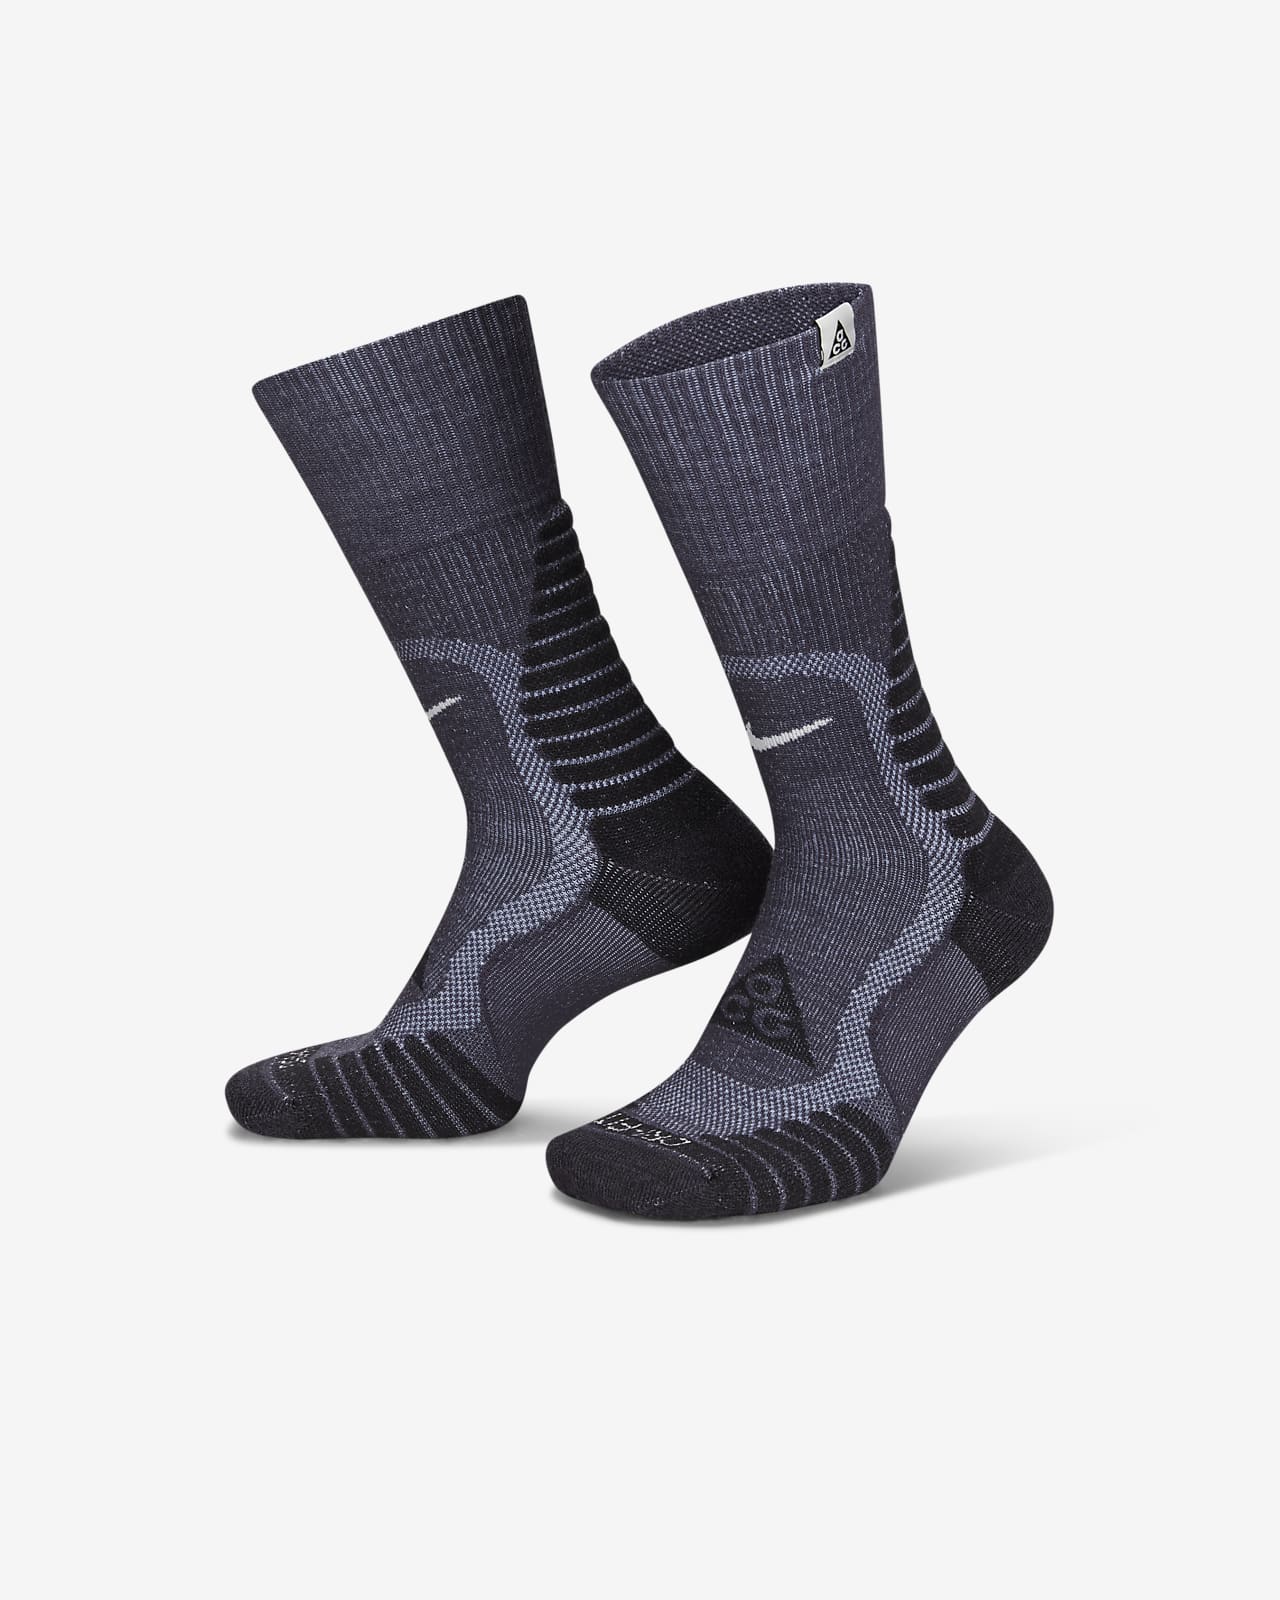 Las mejores ofertas en Talla L, color negro calcetines de Campamento y  senderismo para De hombre